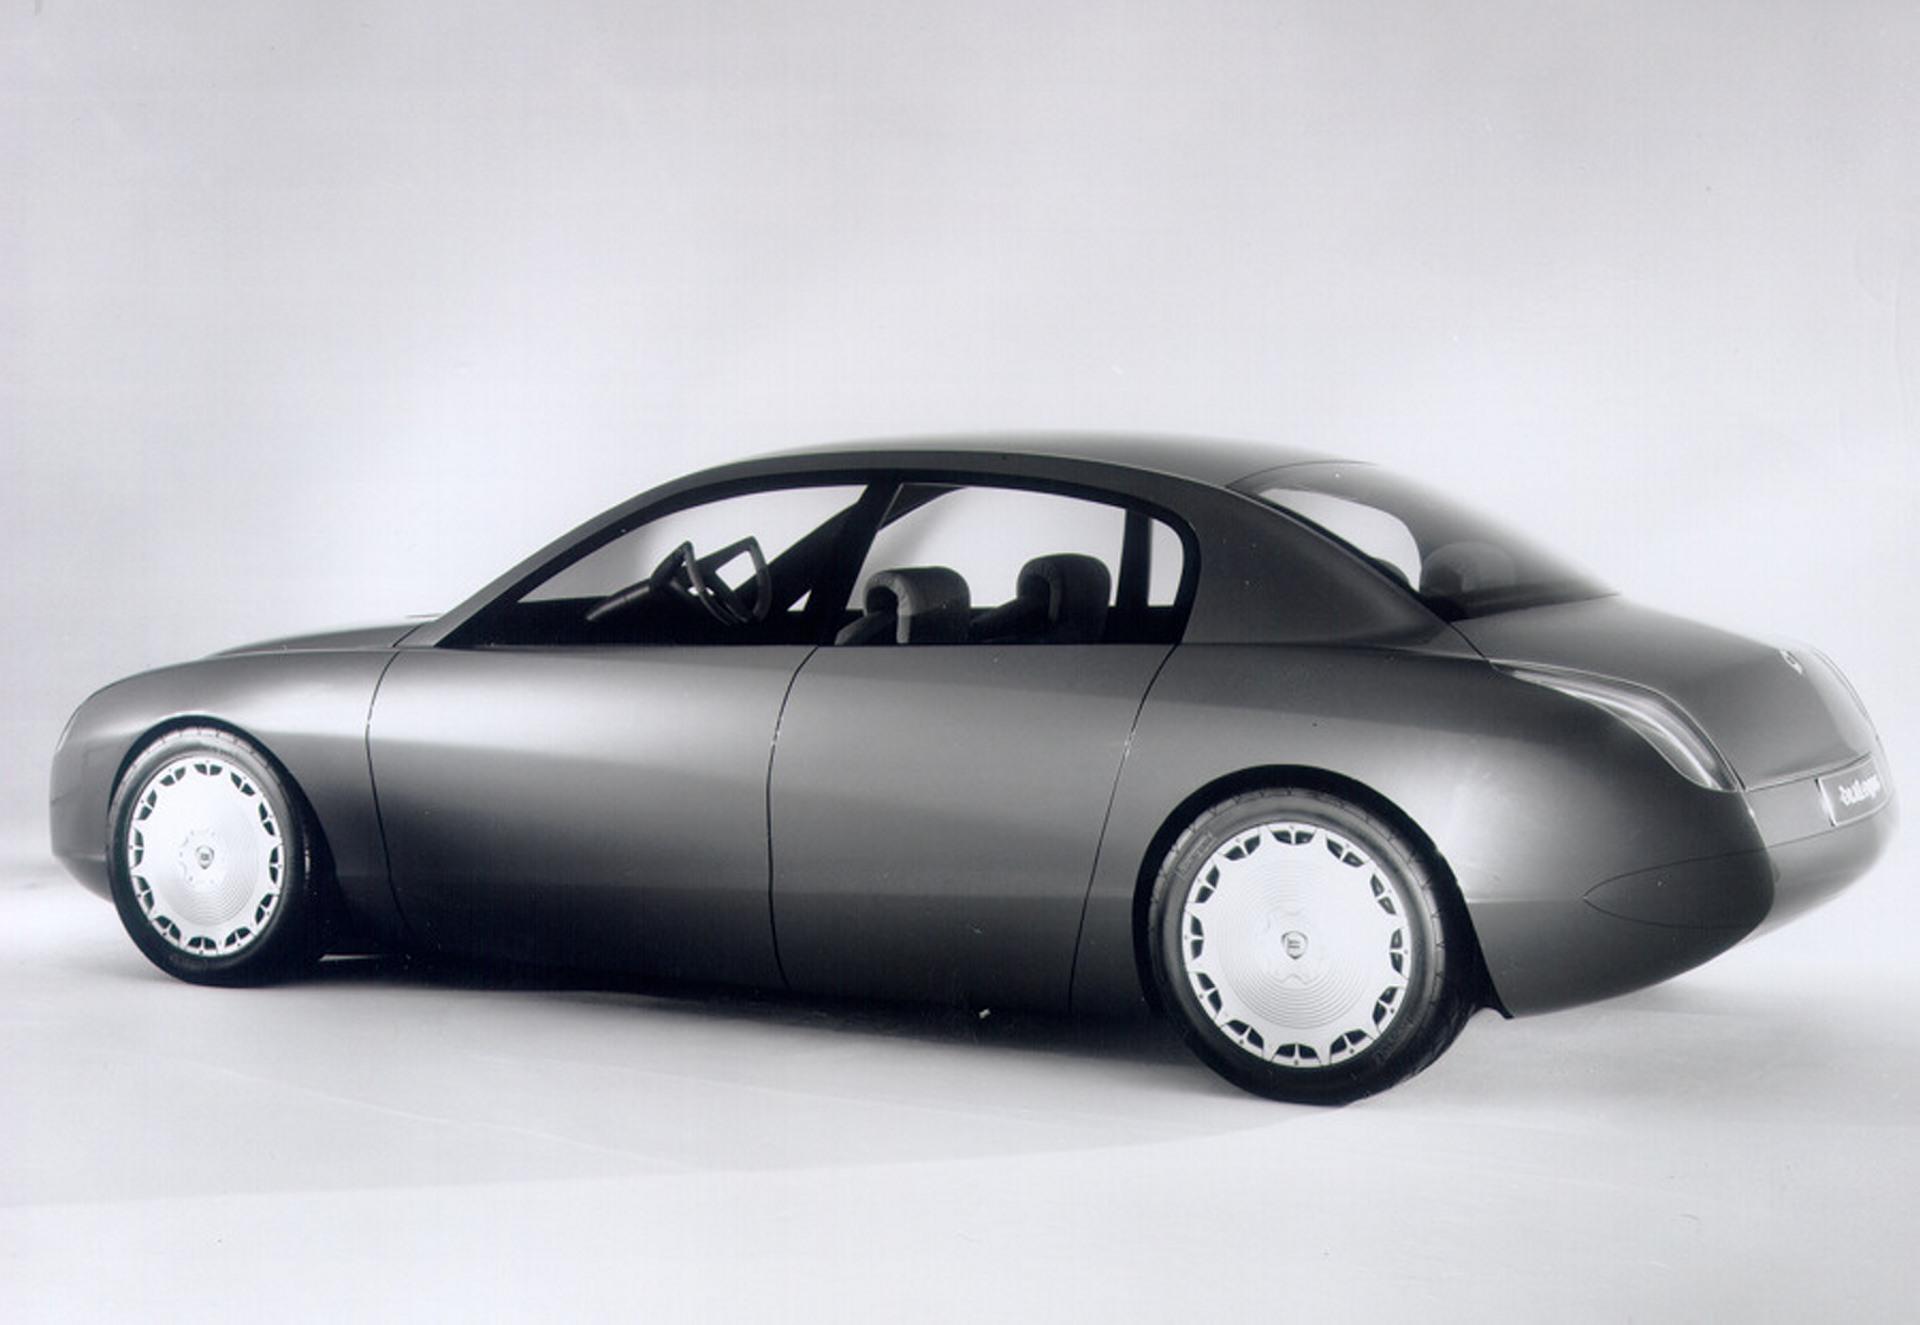 1998 Lancia Dialogos Concept